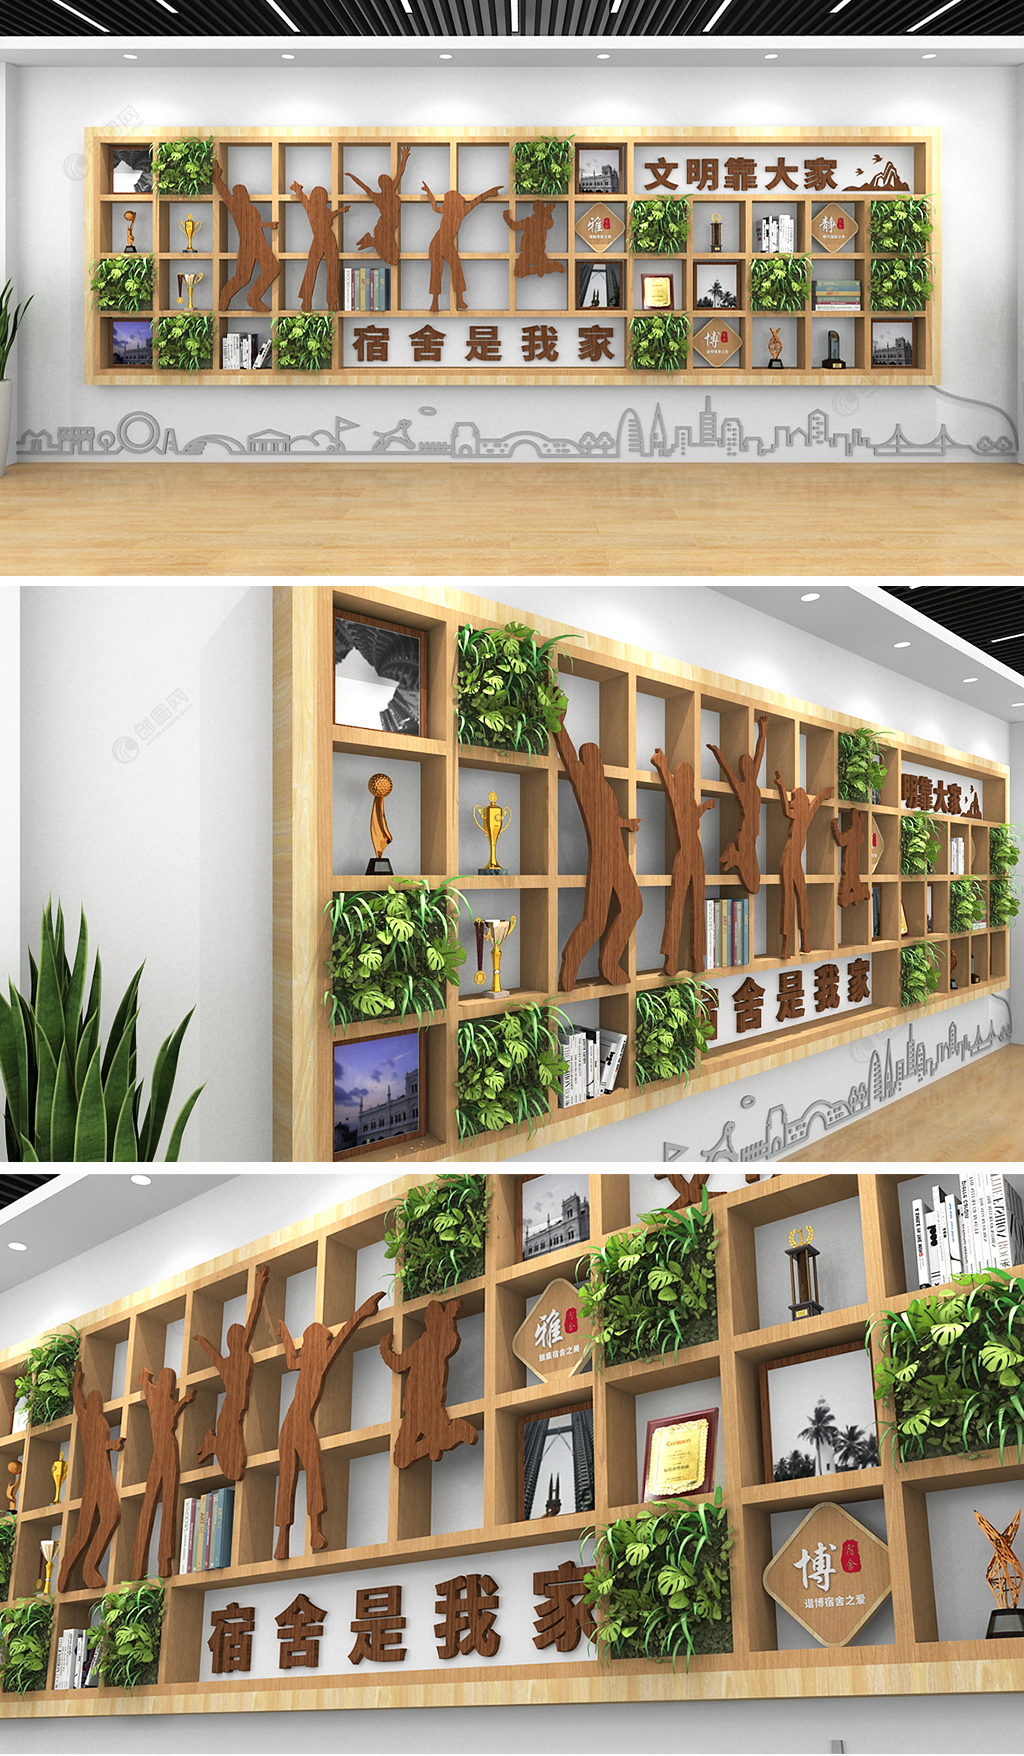 宿舍是我家文明靠大家木质框架班级教室宿舍荣誉墙奖项墙设计